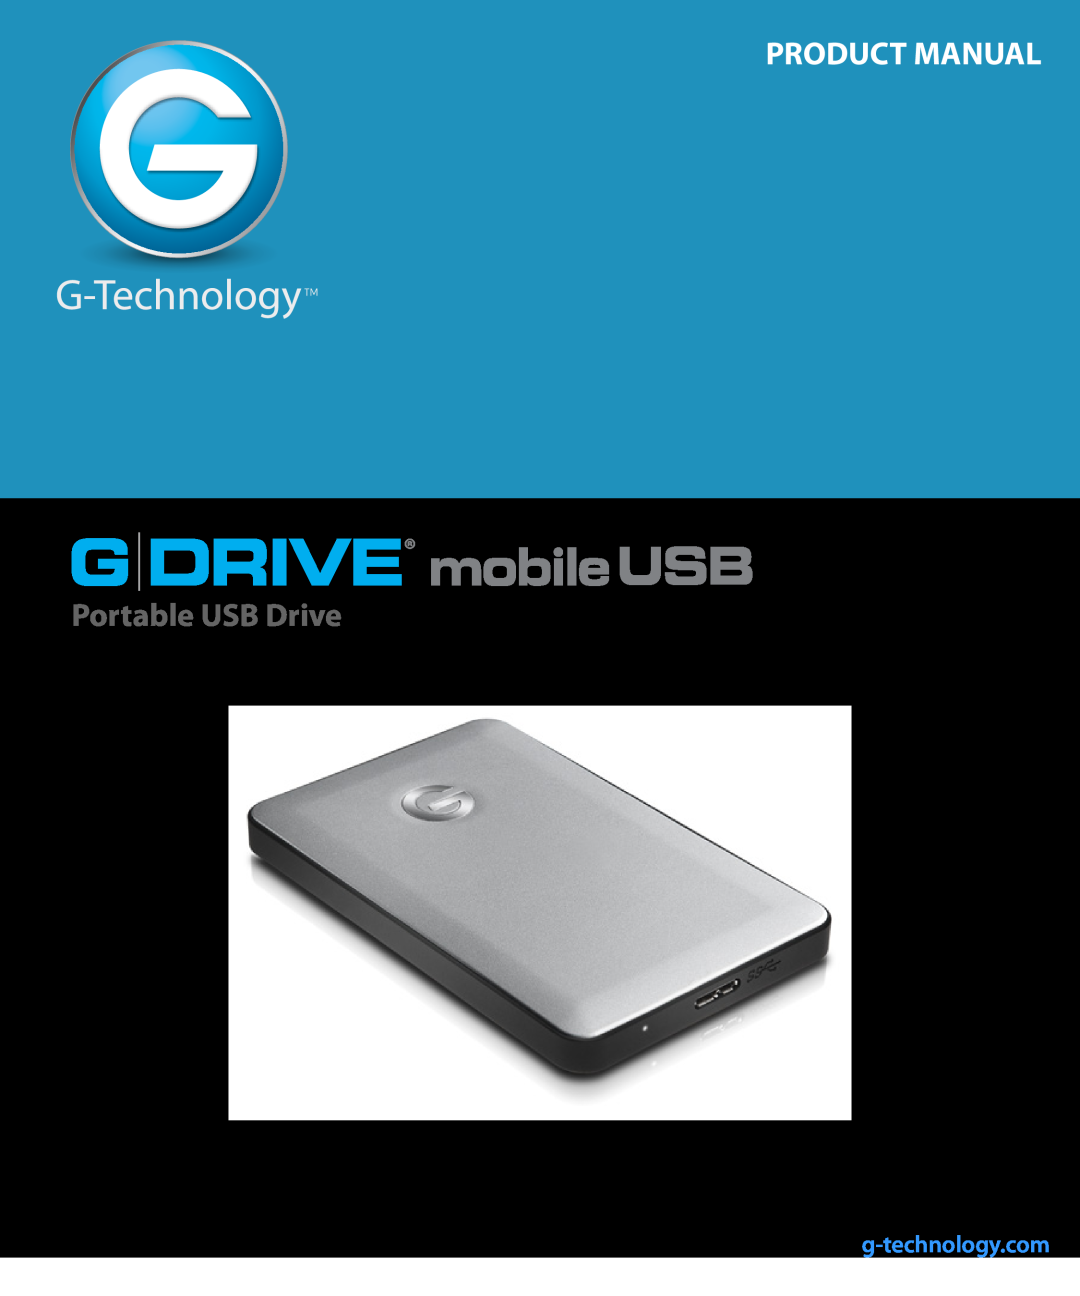 G-Technology 0G02229, GC760AV manual G Drive Usb, Product Manual, Portable USB Drive, g-technology.com 